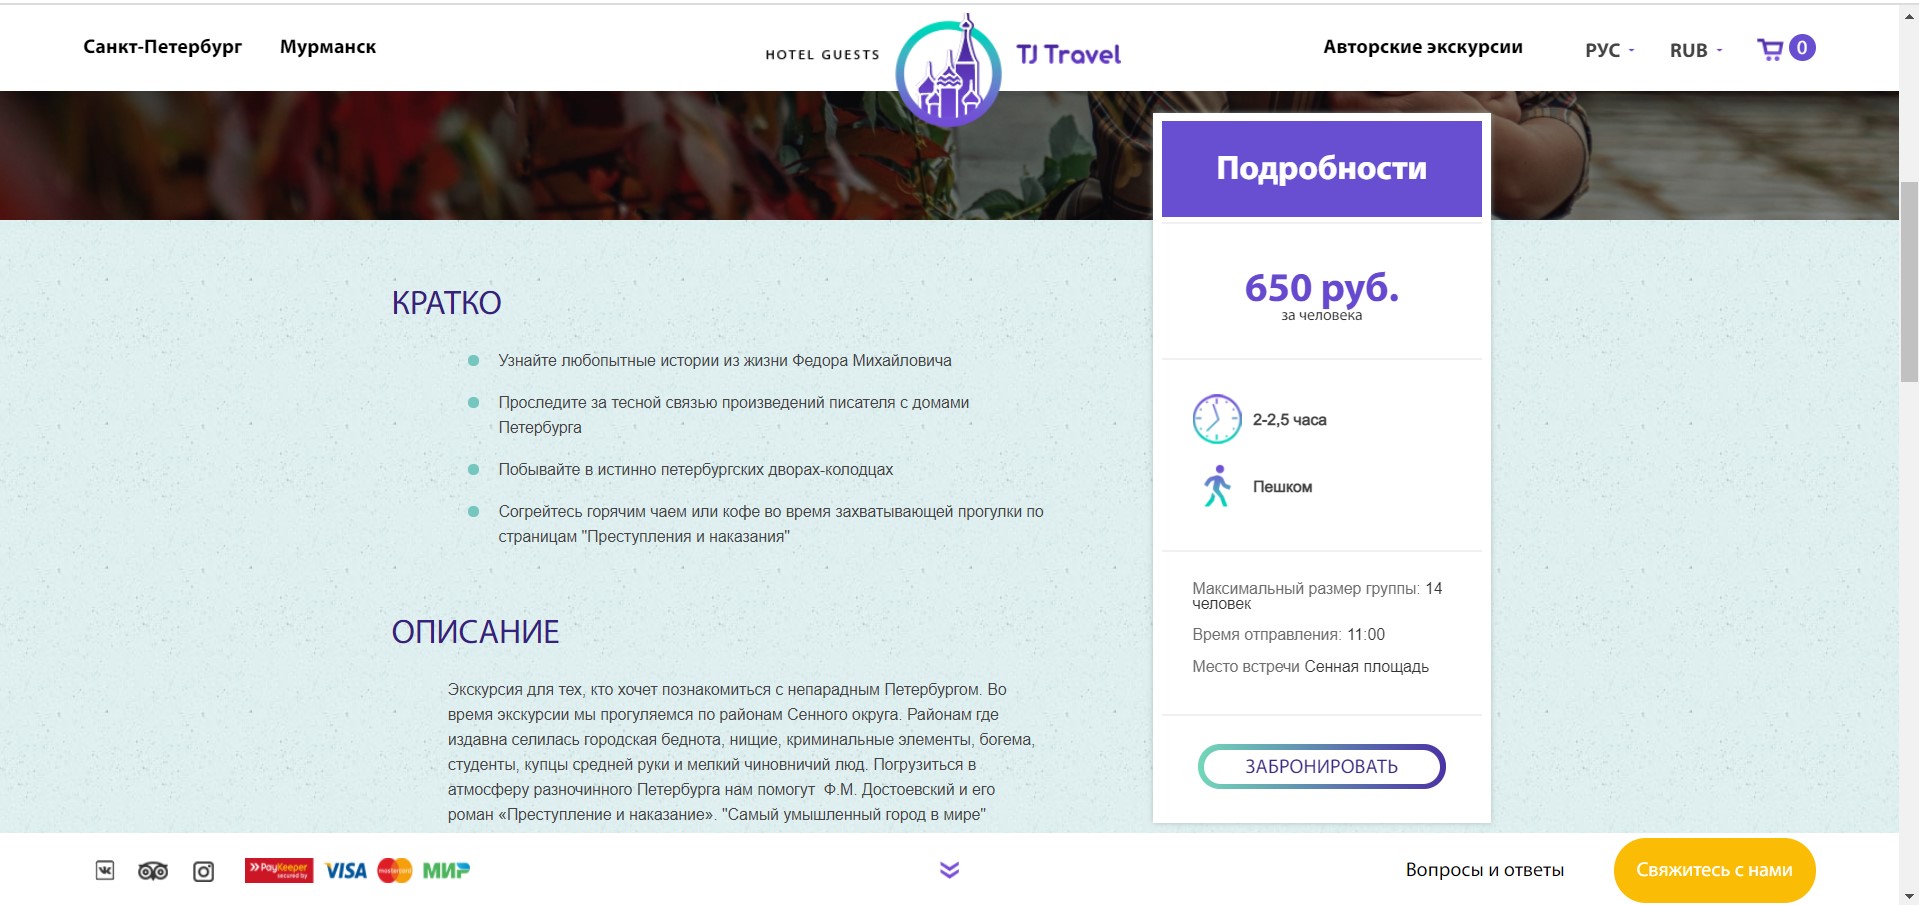 tj travel - туры по россии